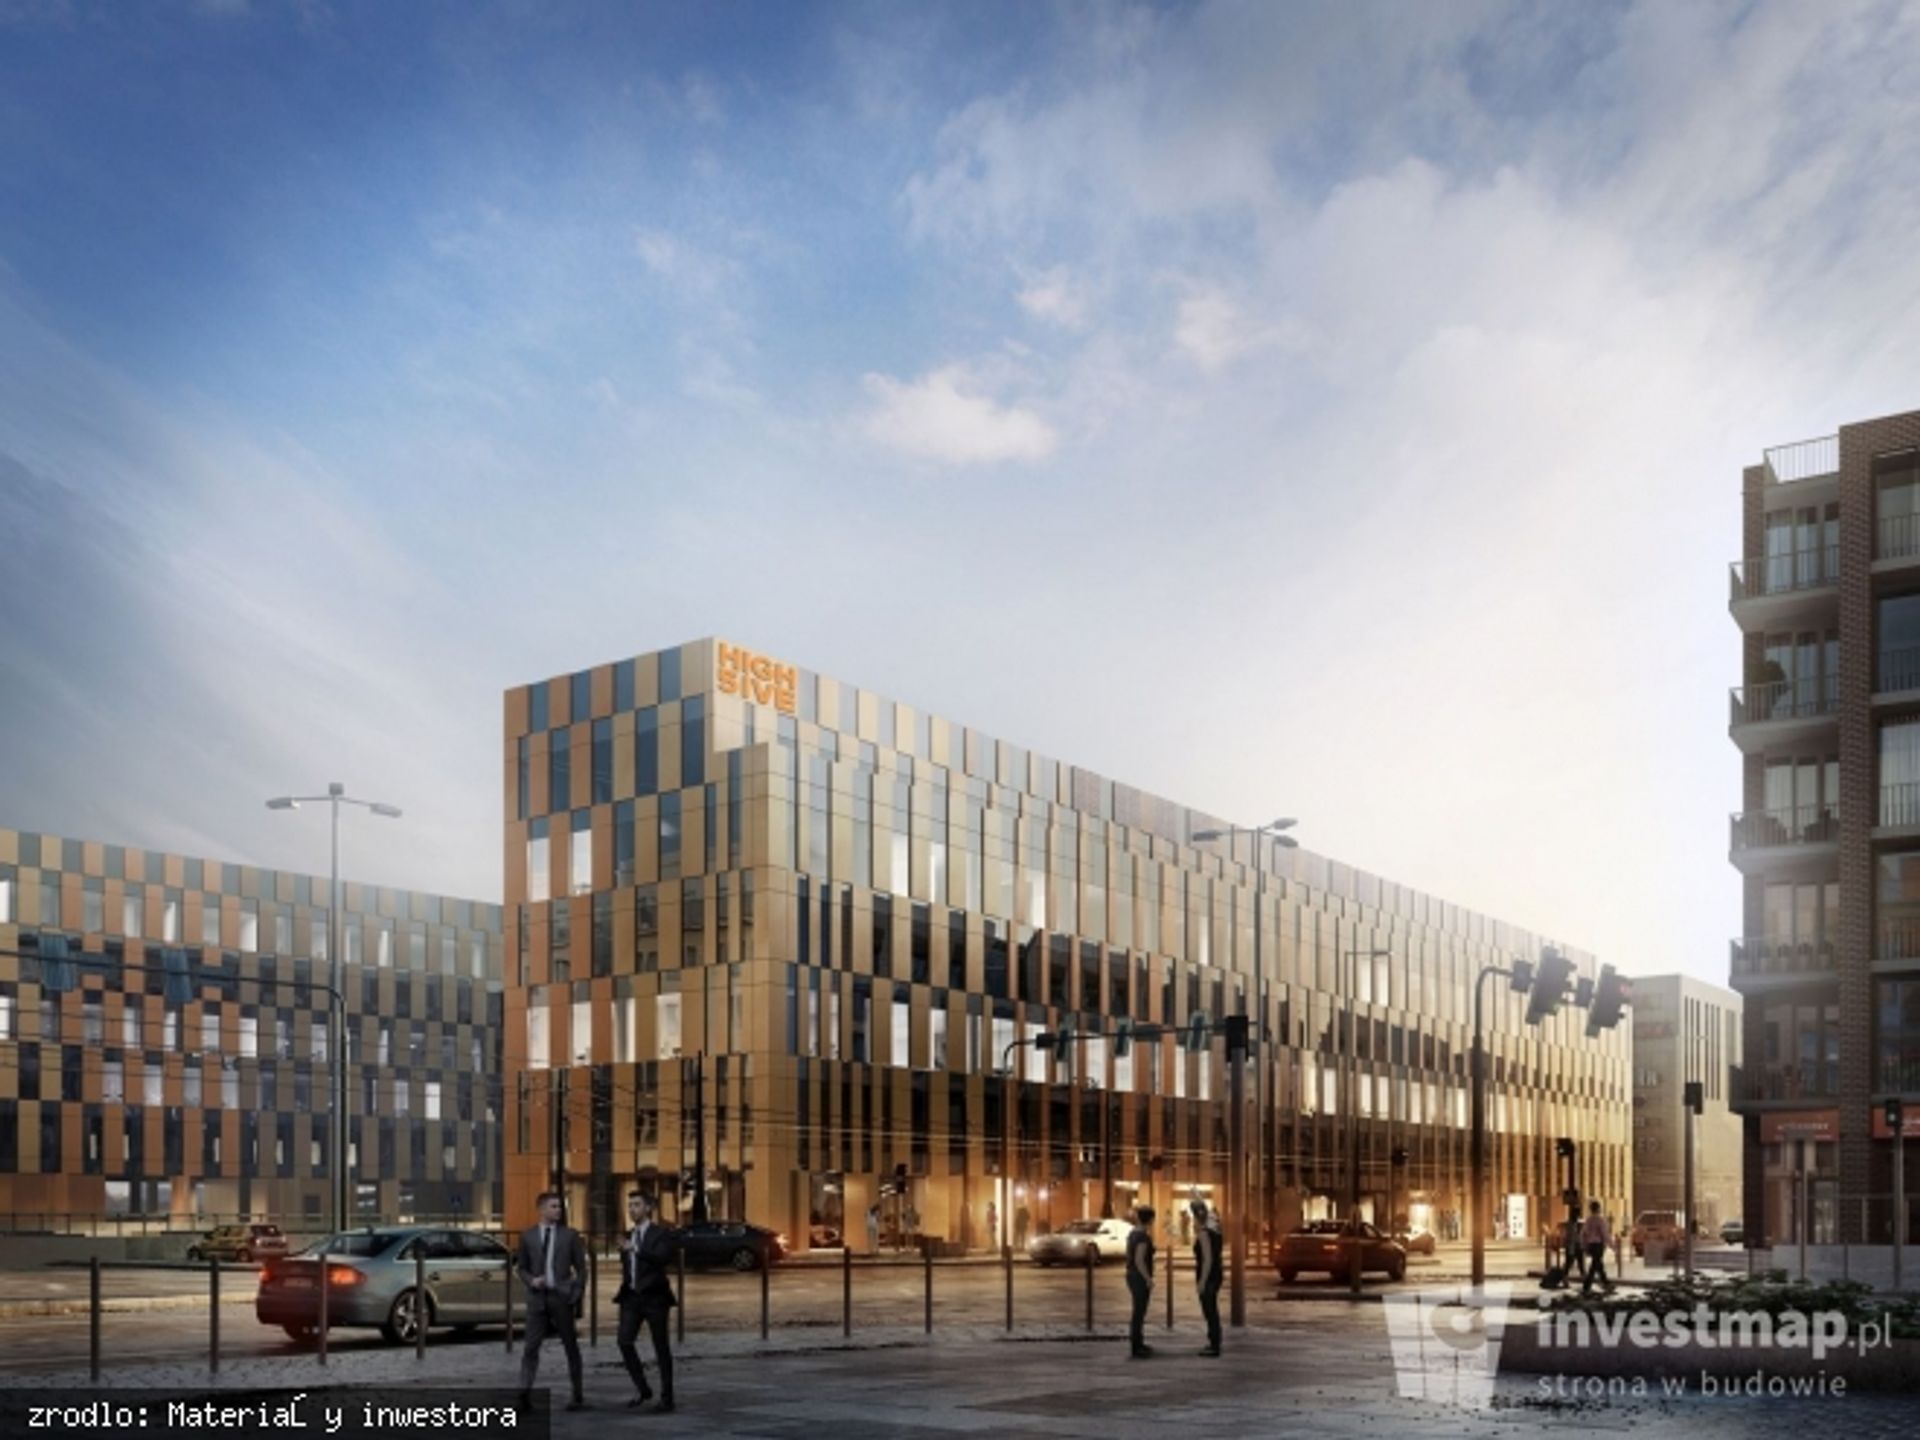  High Five dla Krakowa – projekt biurowy Skanska daje nowy impuls pozytywnej energii dla miasta